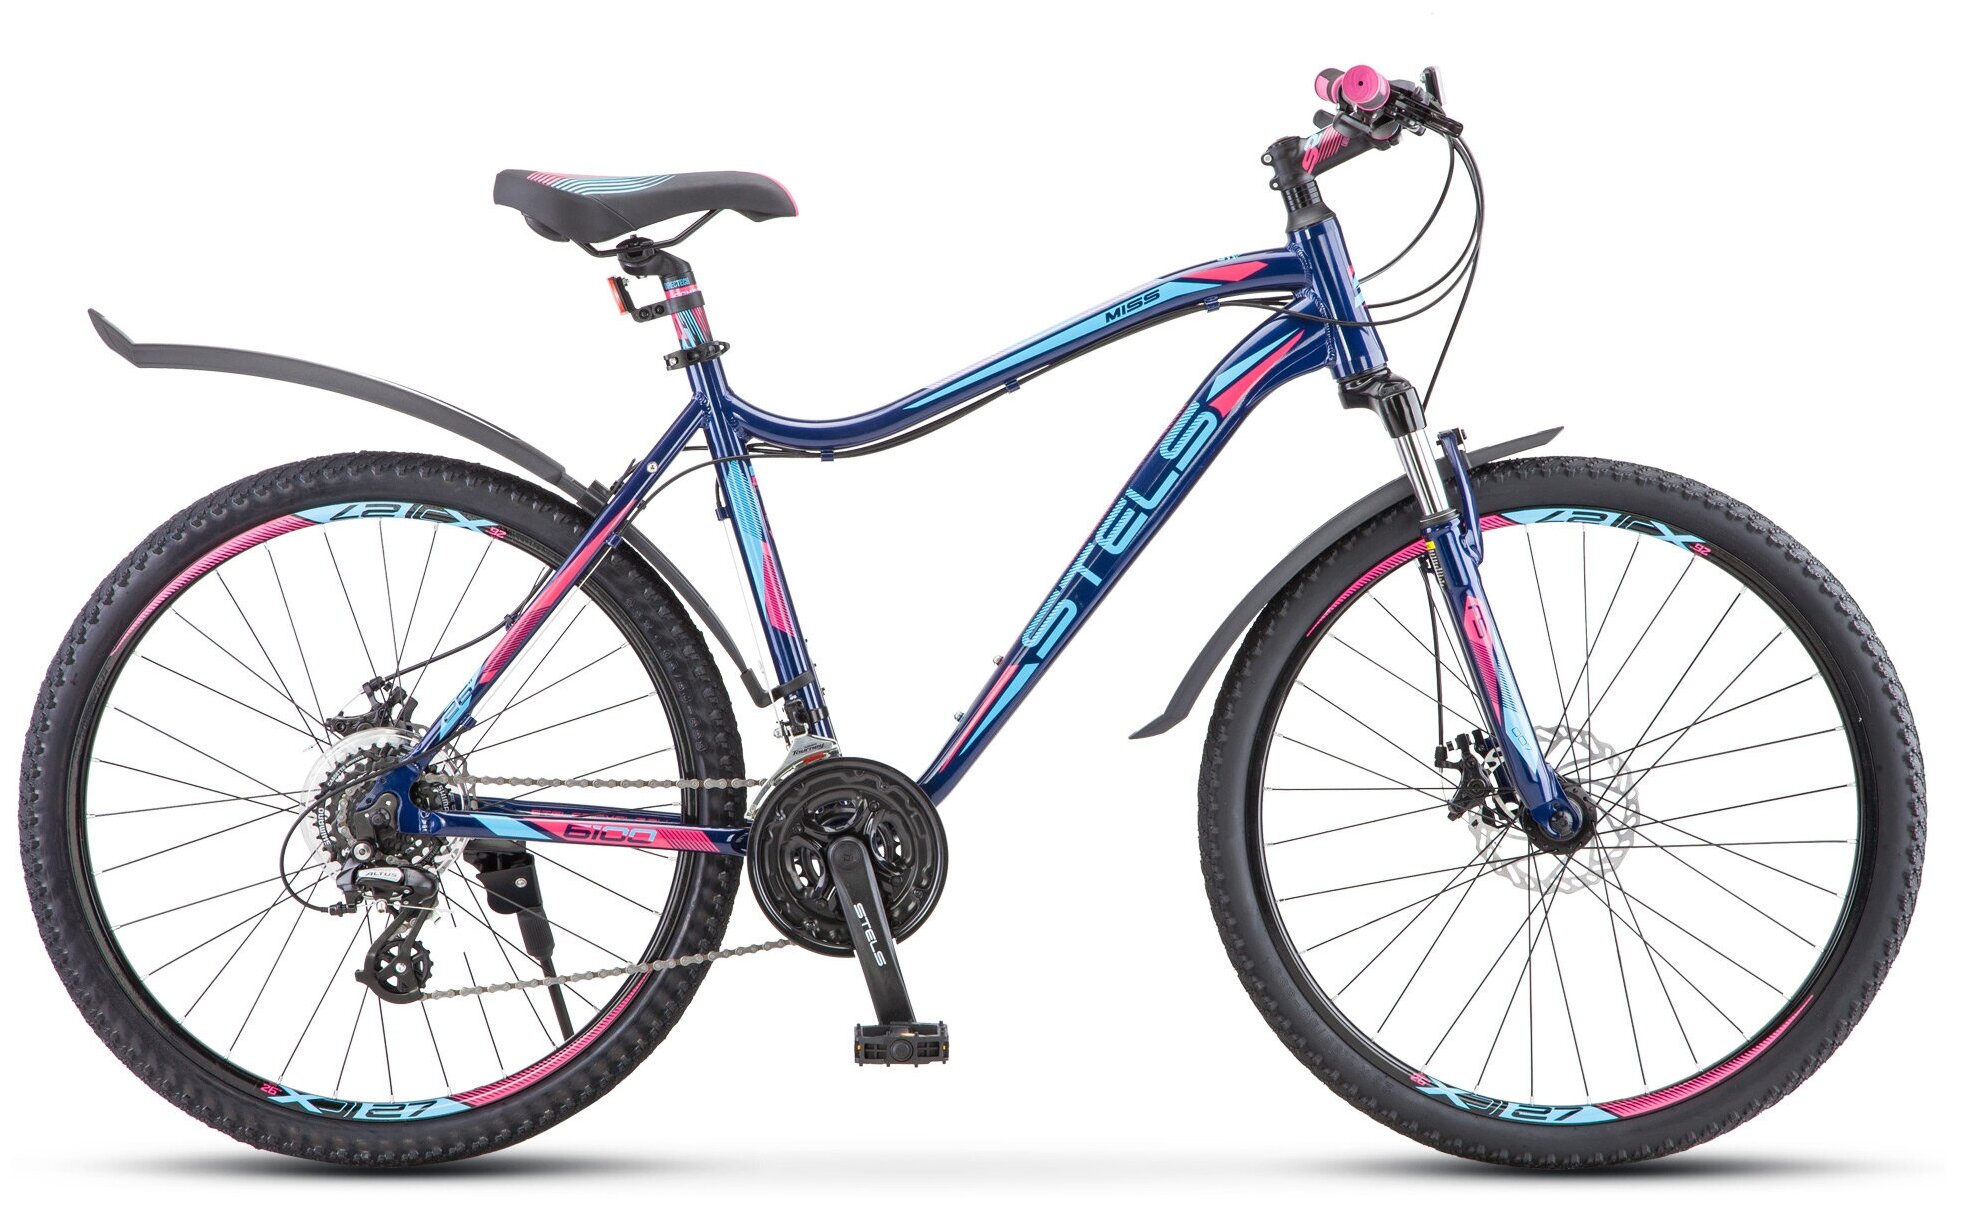 Велосипед STELS Miss 6100 MD 26" V030 рама 19" Тёмно-синий (требует финальной сборки)